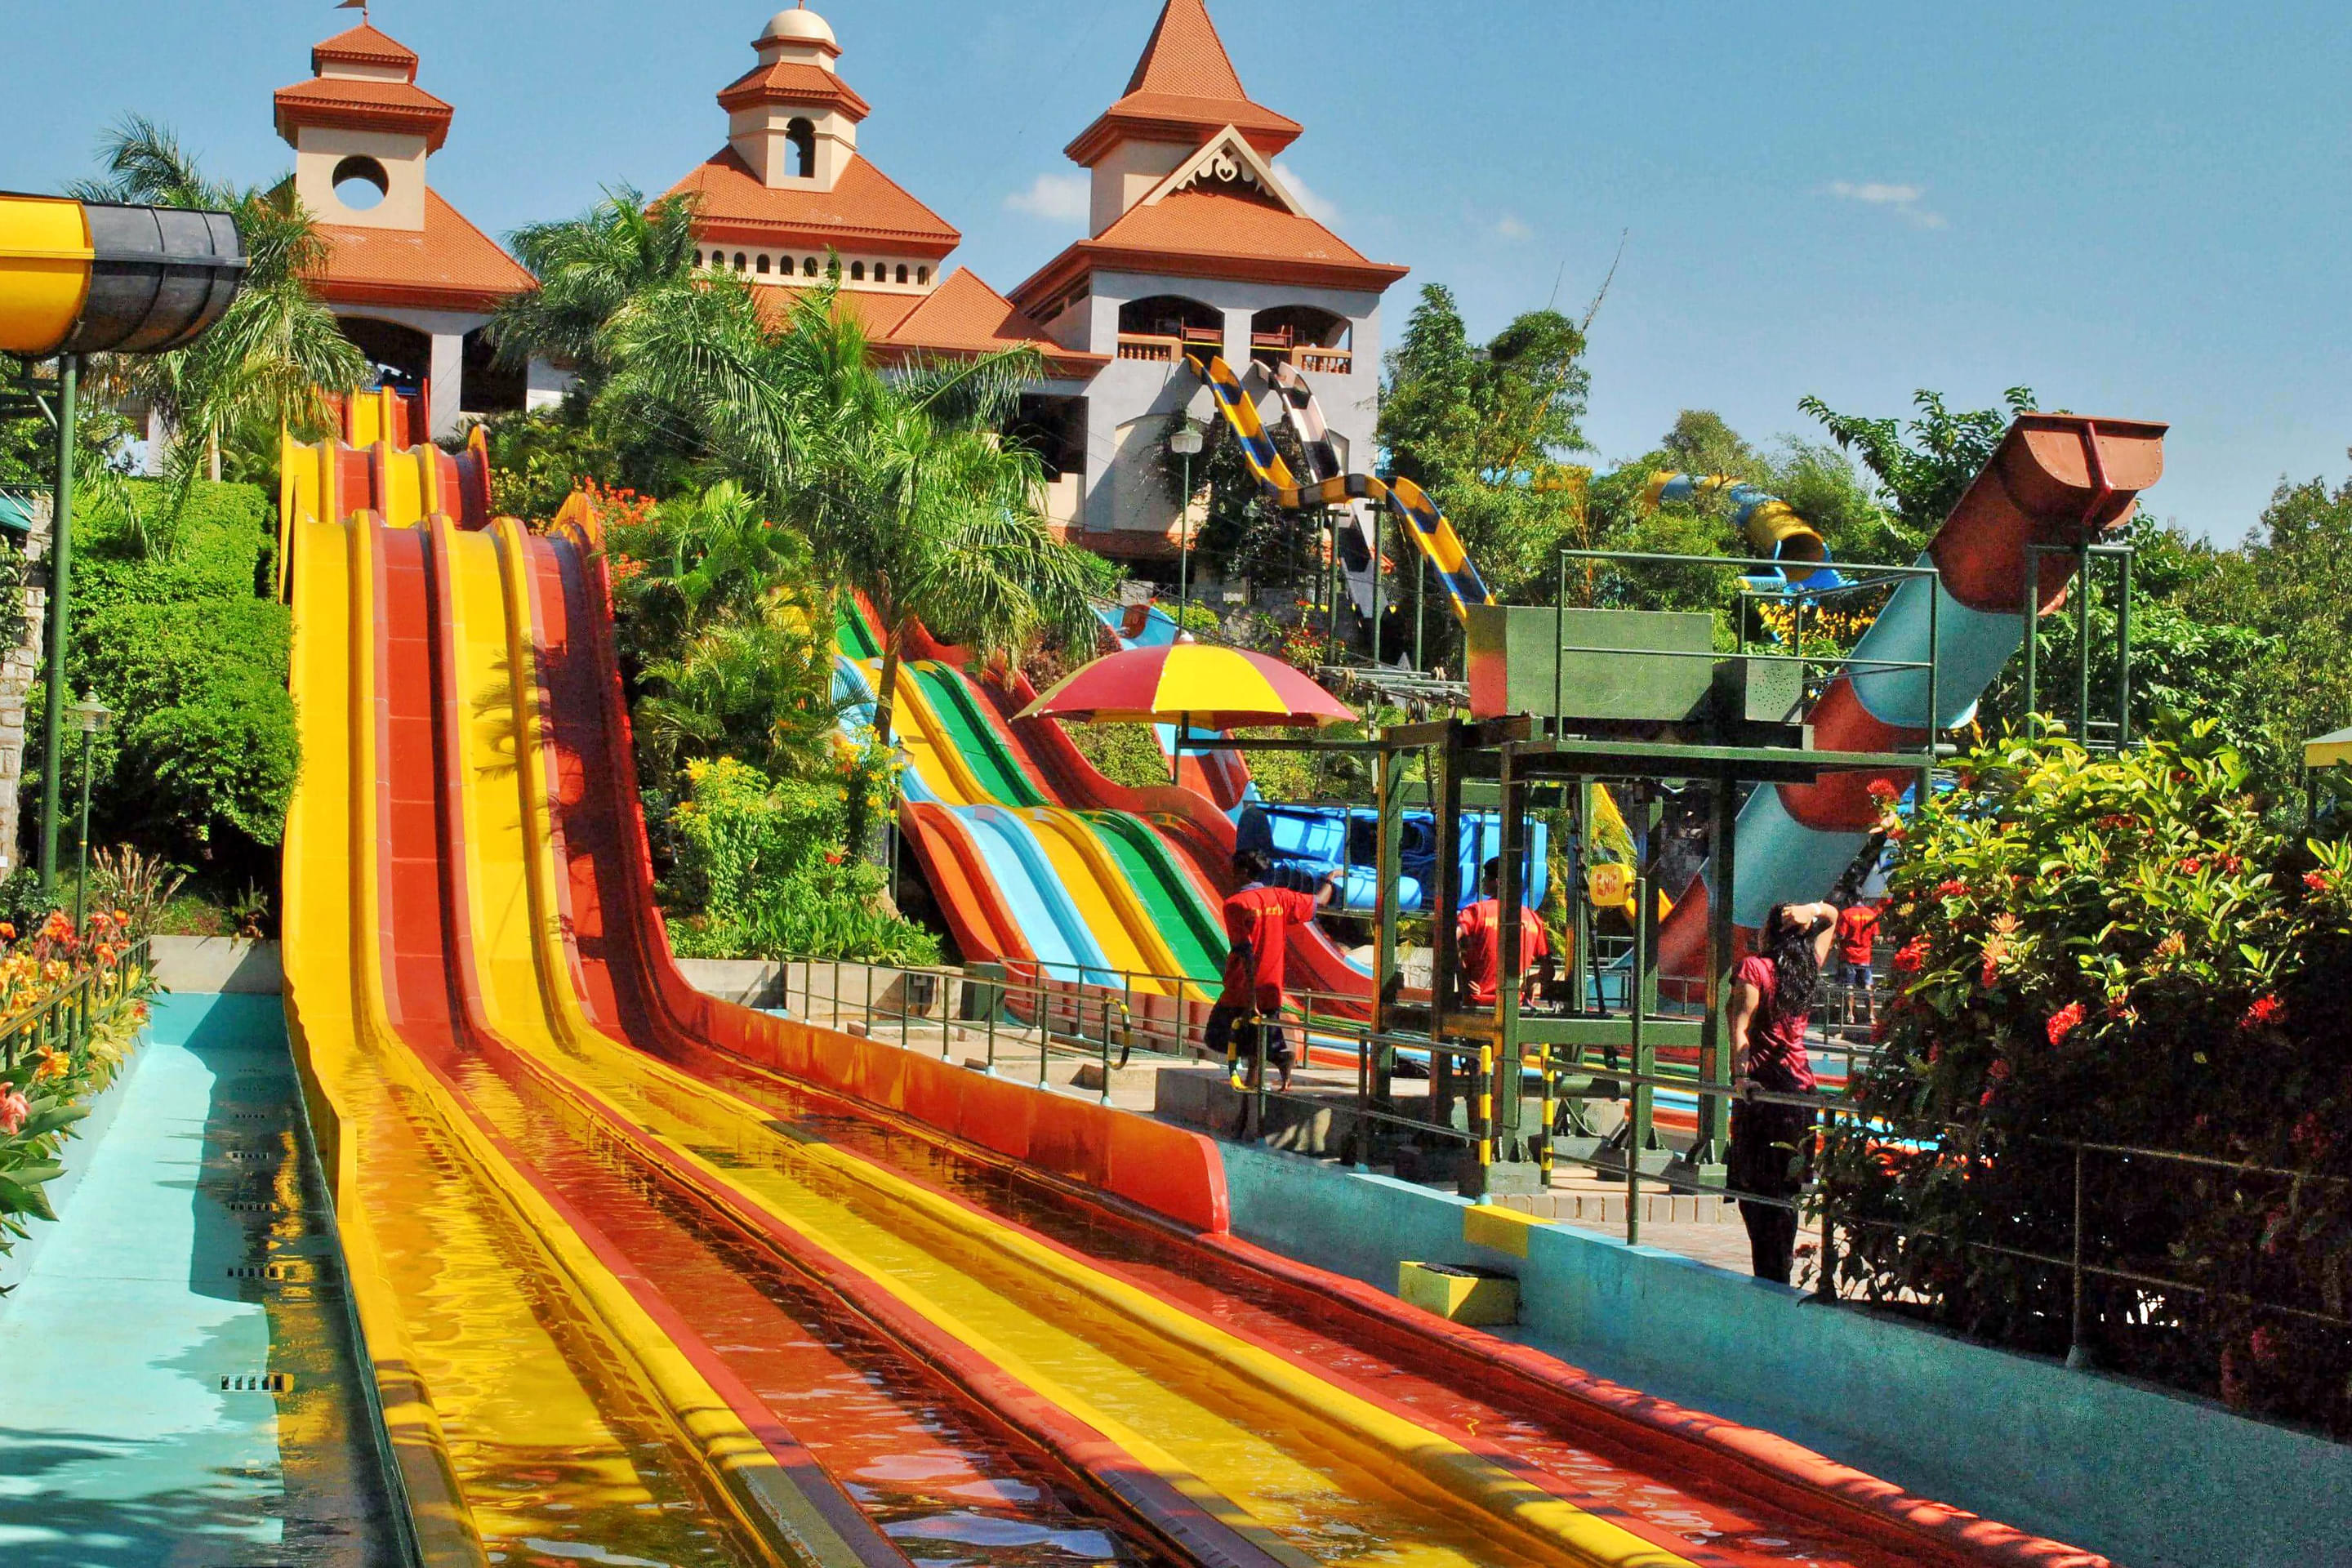 Appu Ghar Amusement Park Overview